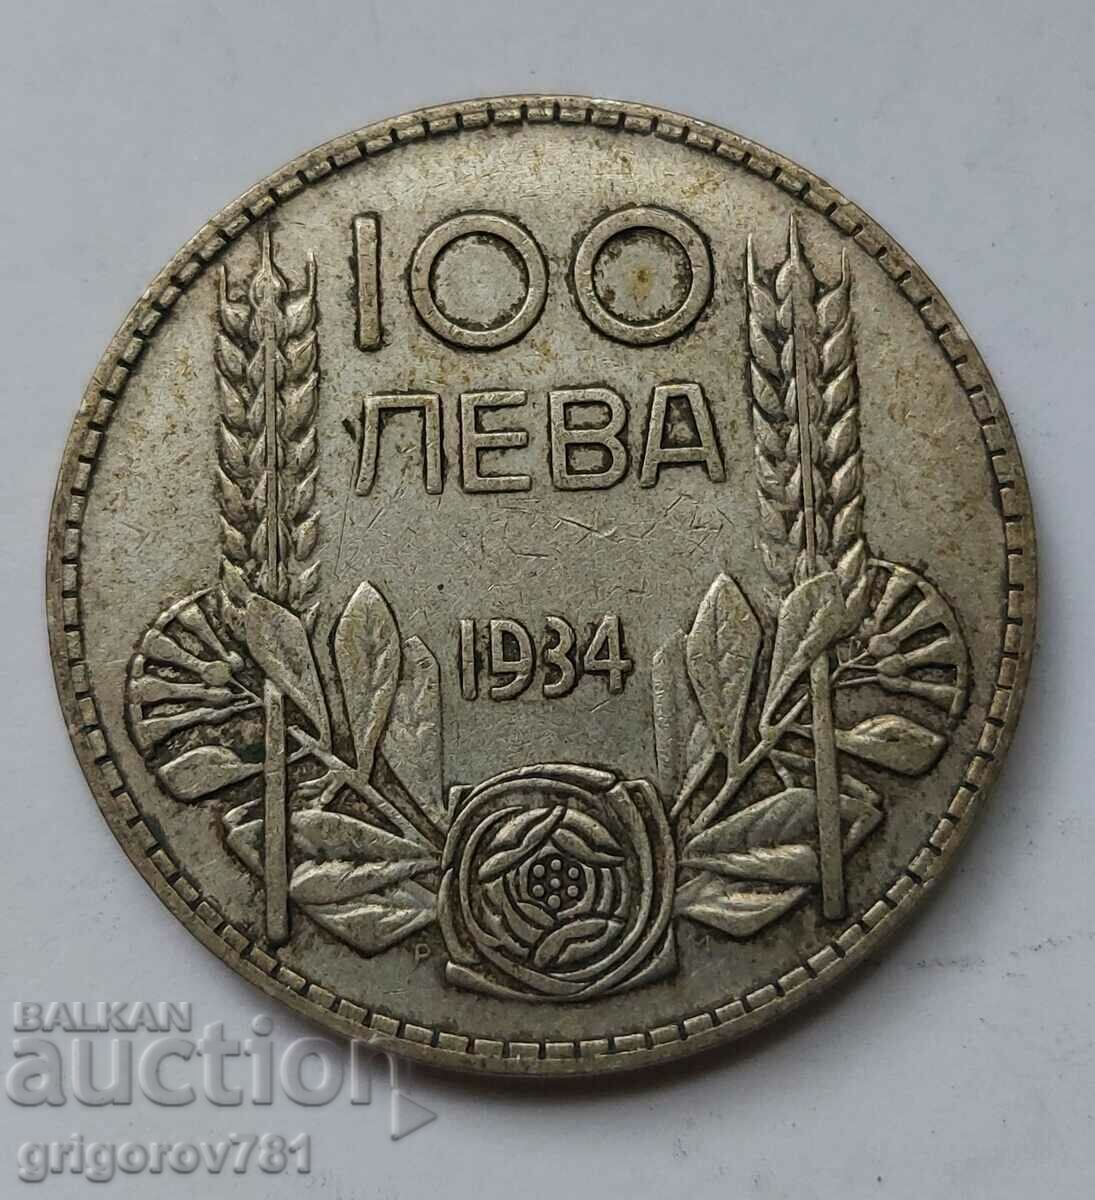 100 leva silver Bulgaria 1934 - silver coin #29